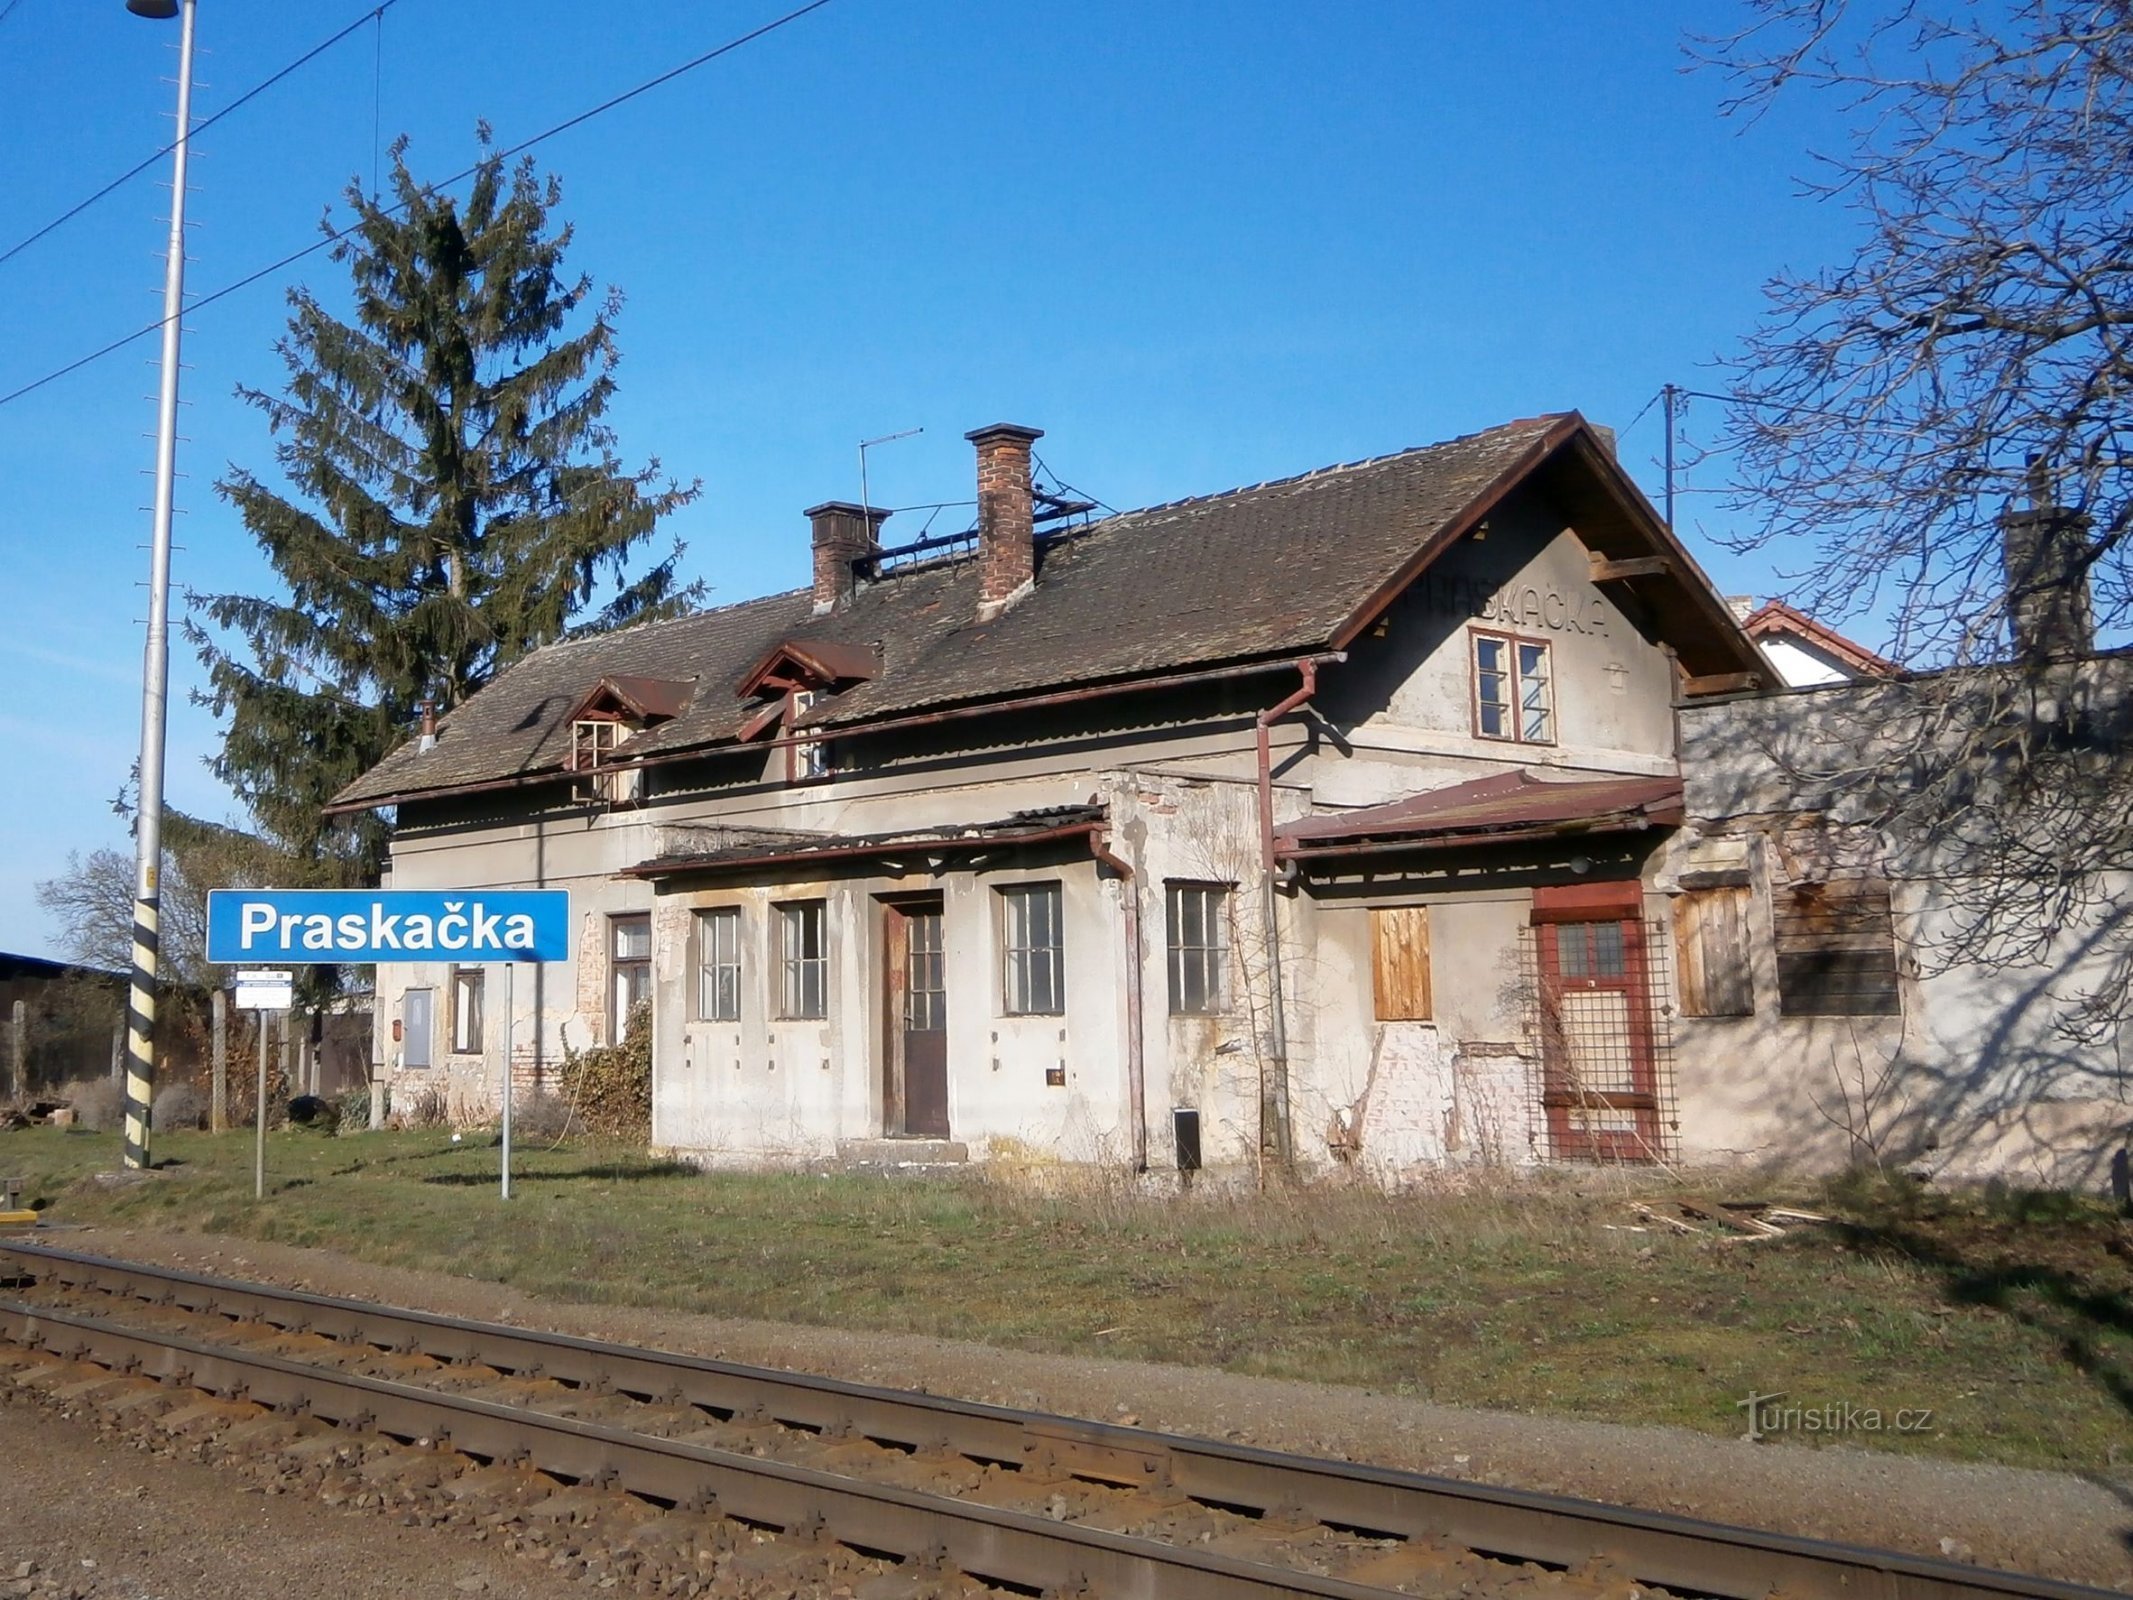 已经拆除的旧火车站 (Praskačka, 26.3.2017/XNUMX/XNUMX)